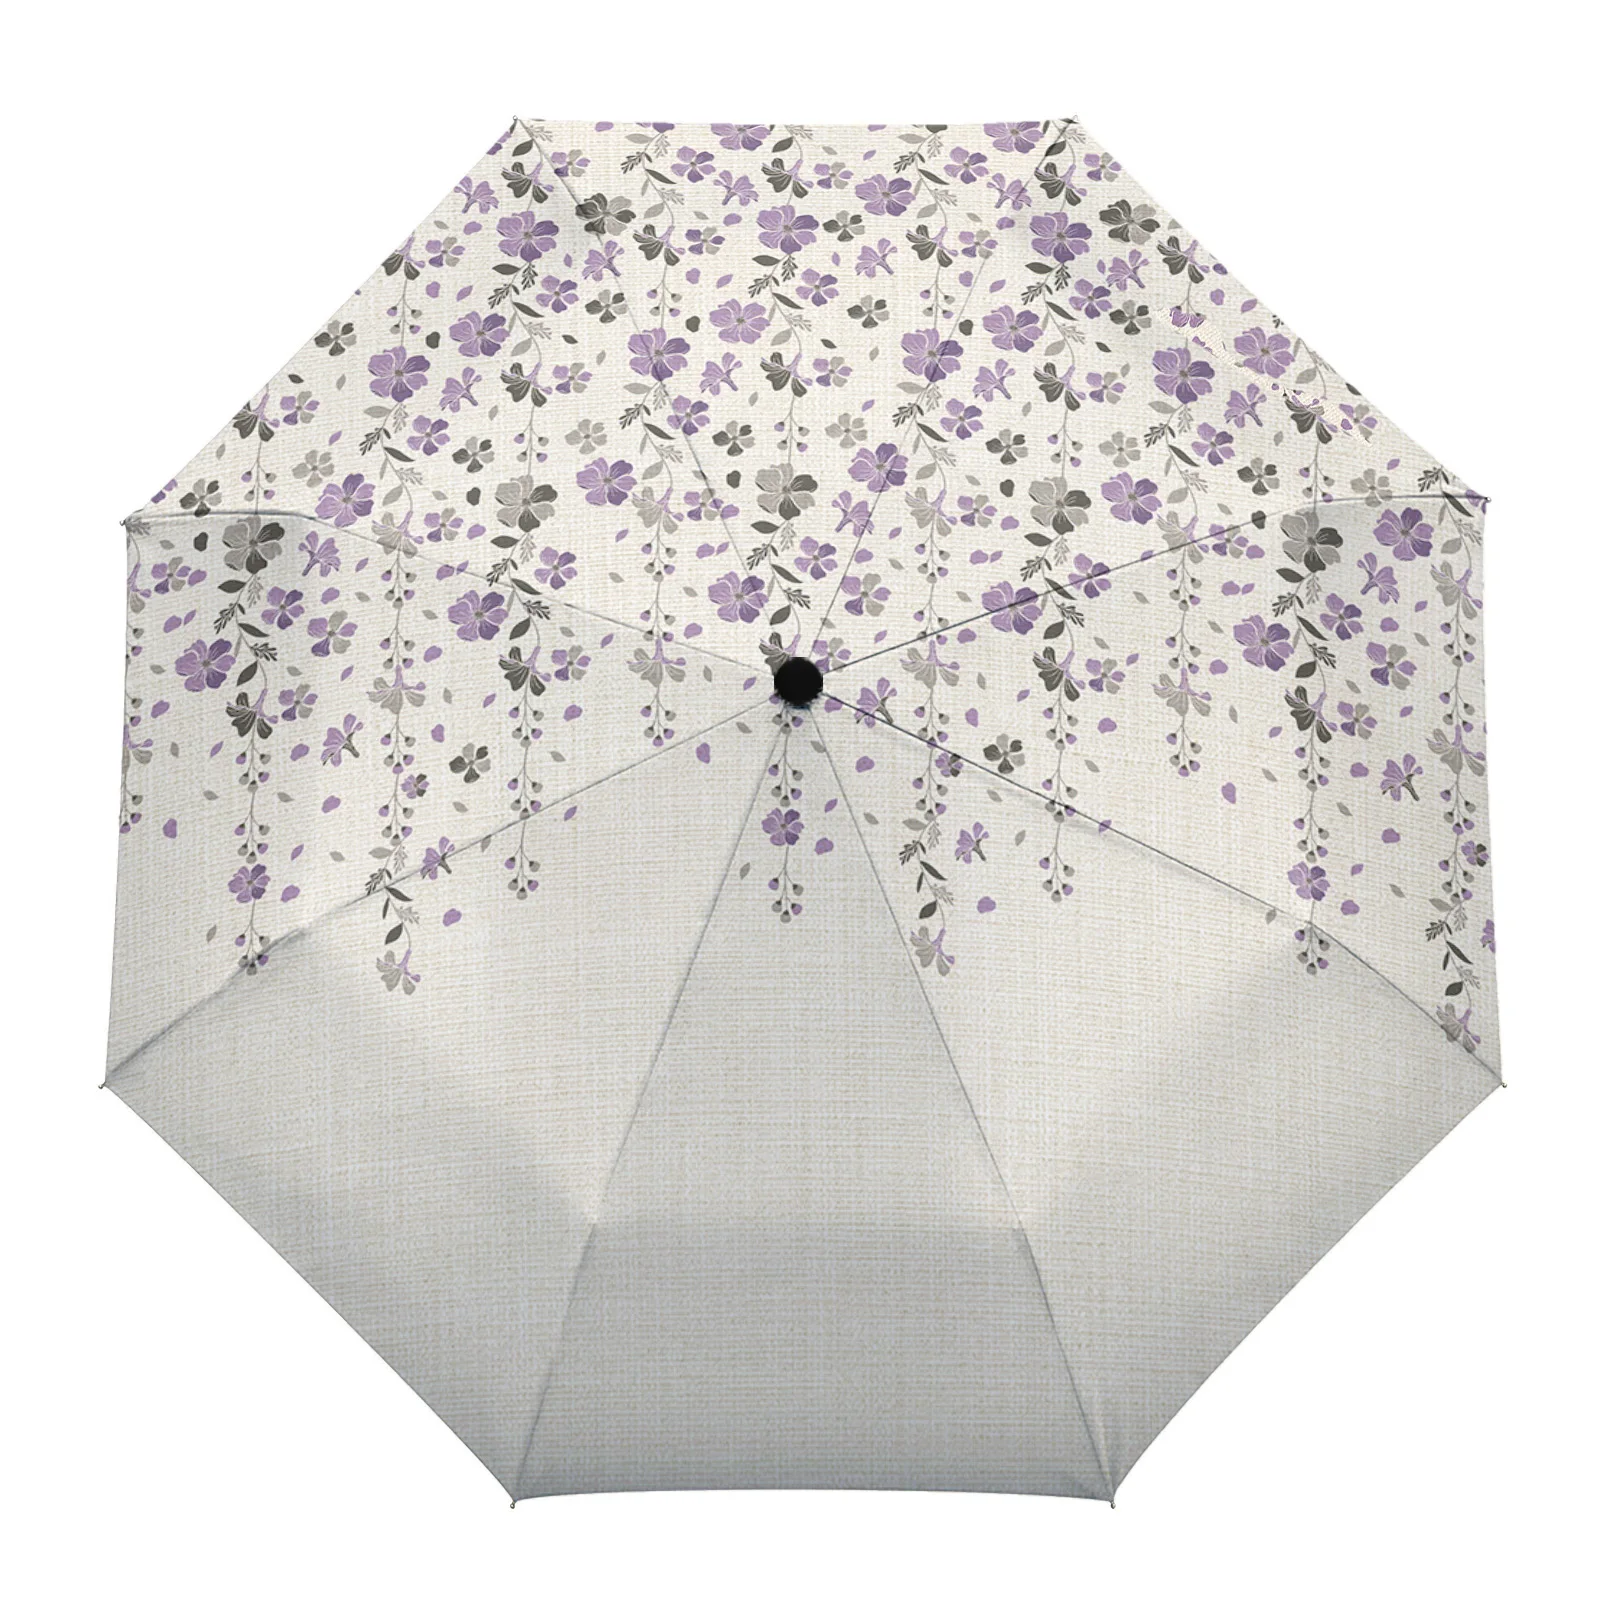 

Женский уличный зонт из хлопка и льна, автоматический складной пляжный зонт от дождя, фиолетовый, серый, с цветочным принтом